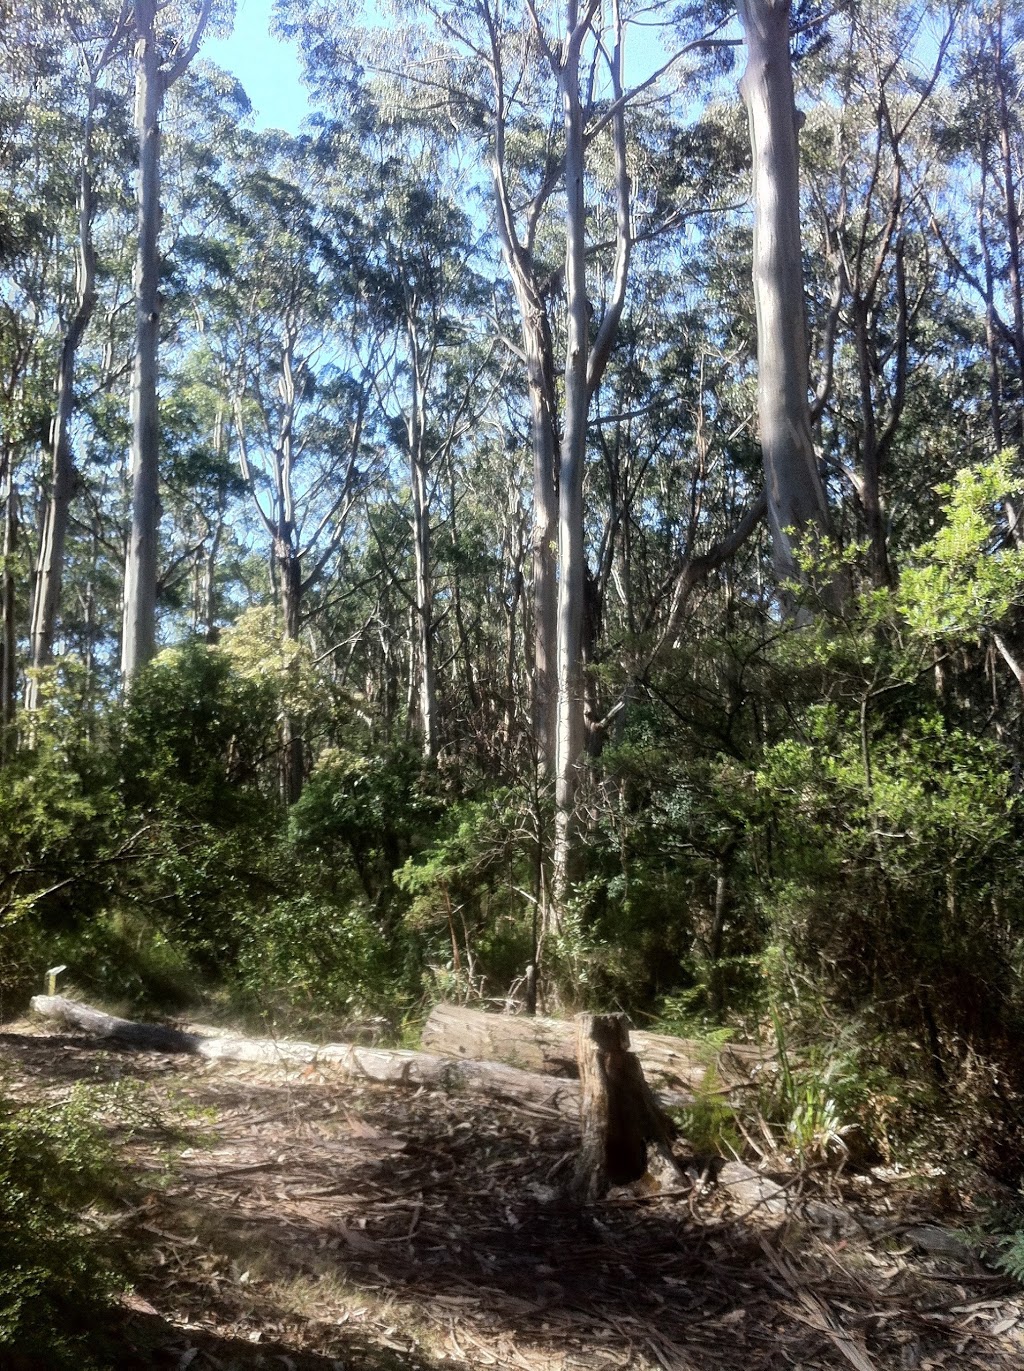 Elliot Ridge hike-in campsites | campground | Cape Otway VIC 3233, Australia